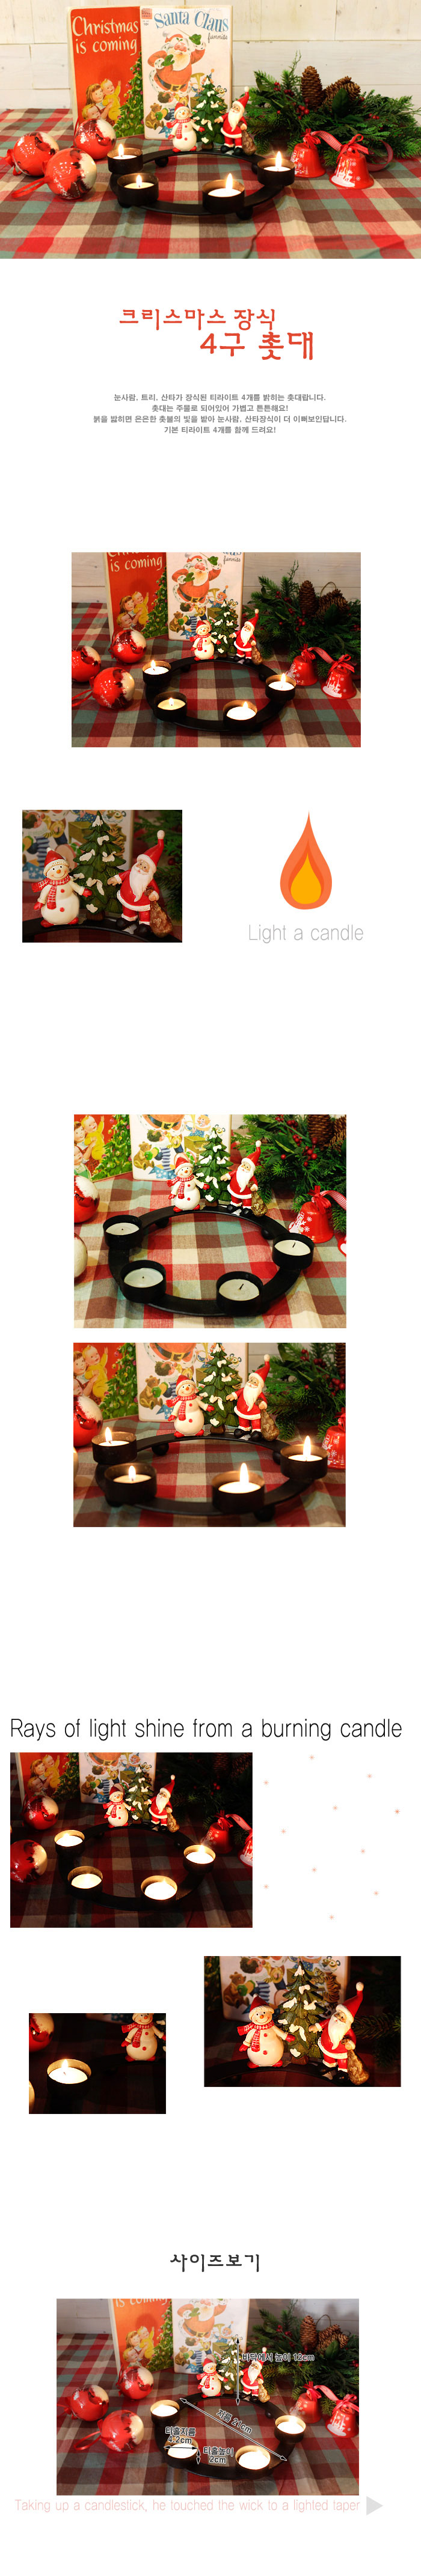 크리스마스 4구 촛대, 인테리어소품 데코장식 캔들장식